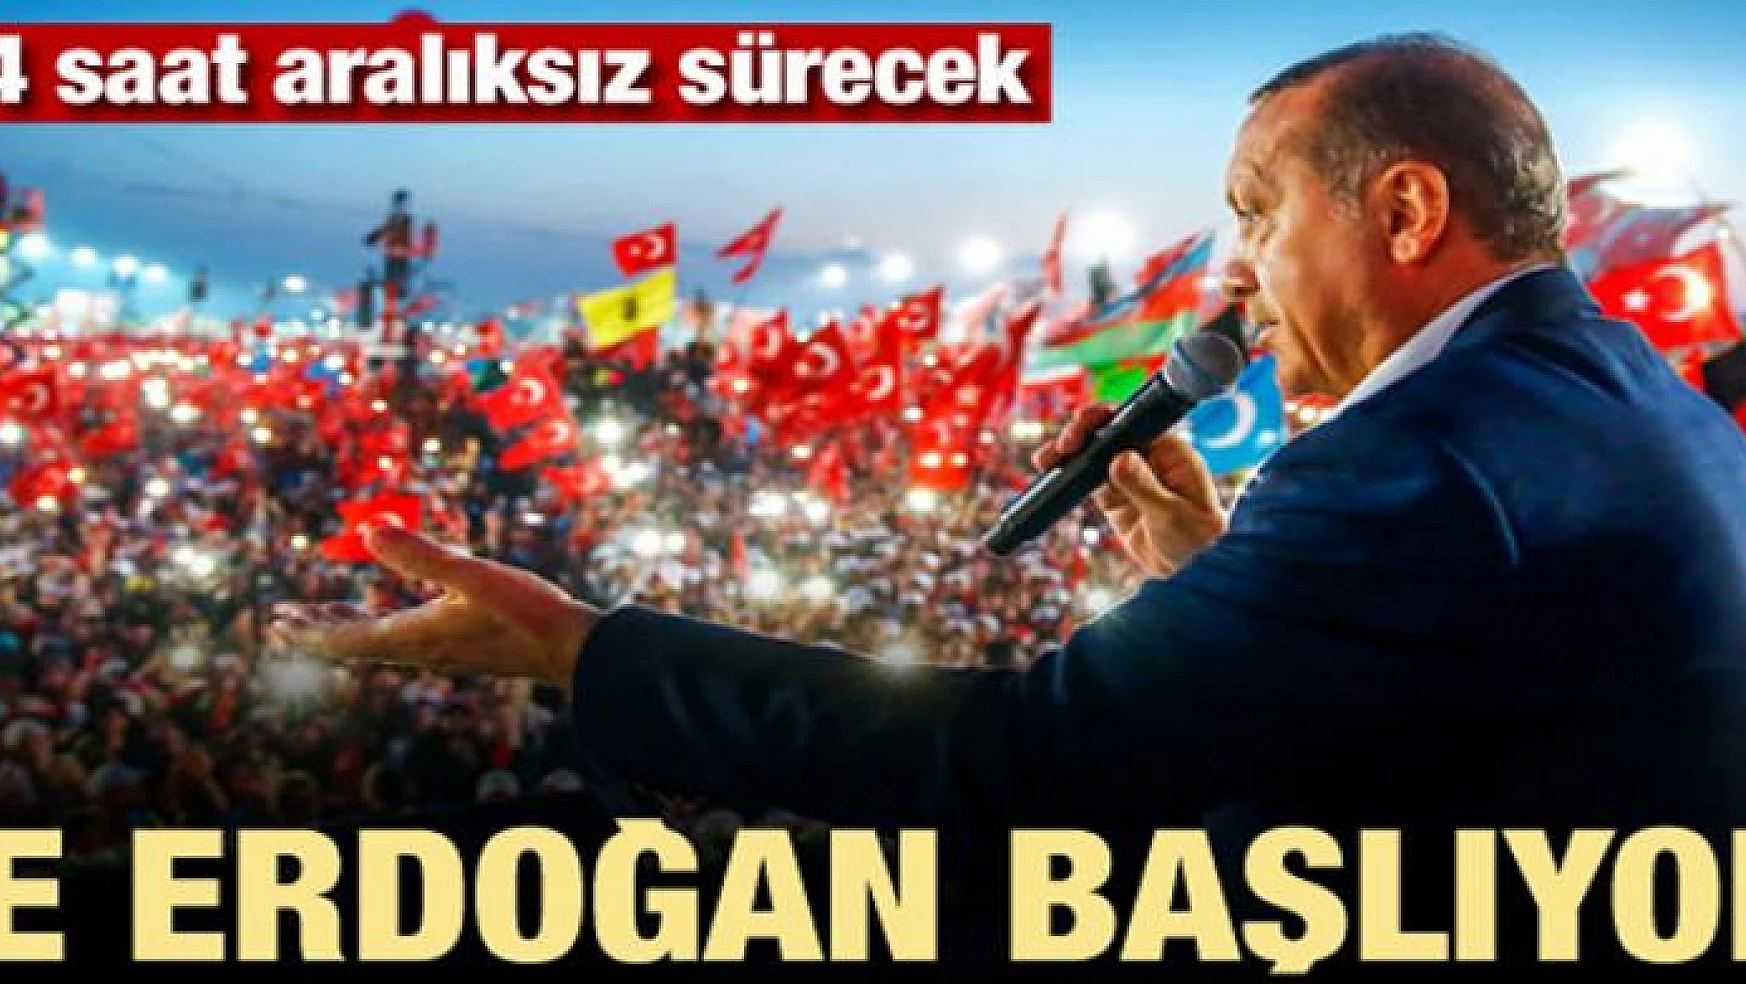 Ve Erdoğan başlıyor! 24 saat aralıksız sürecek